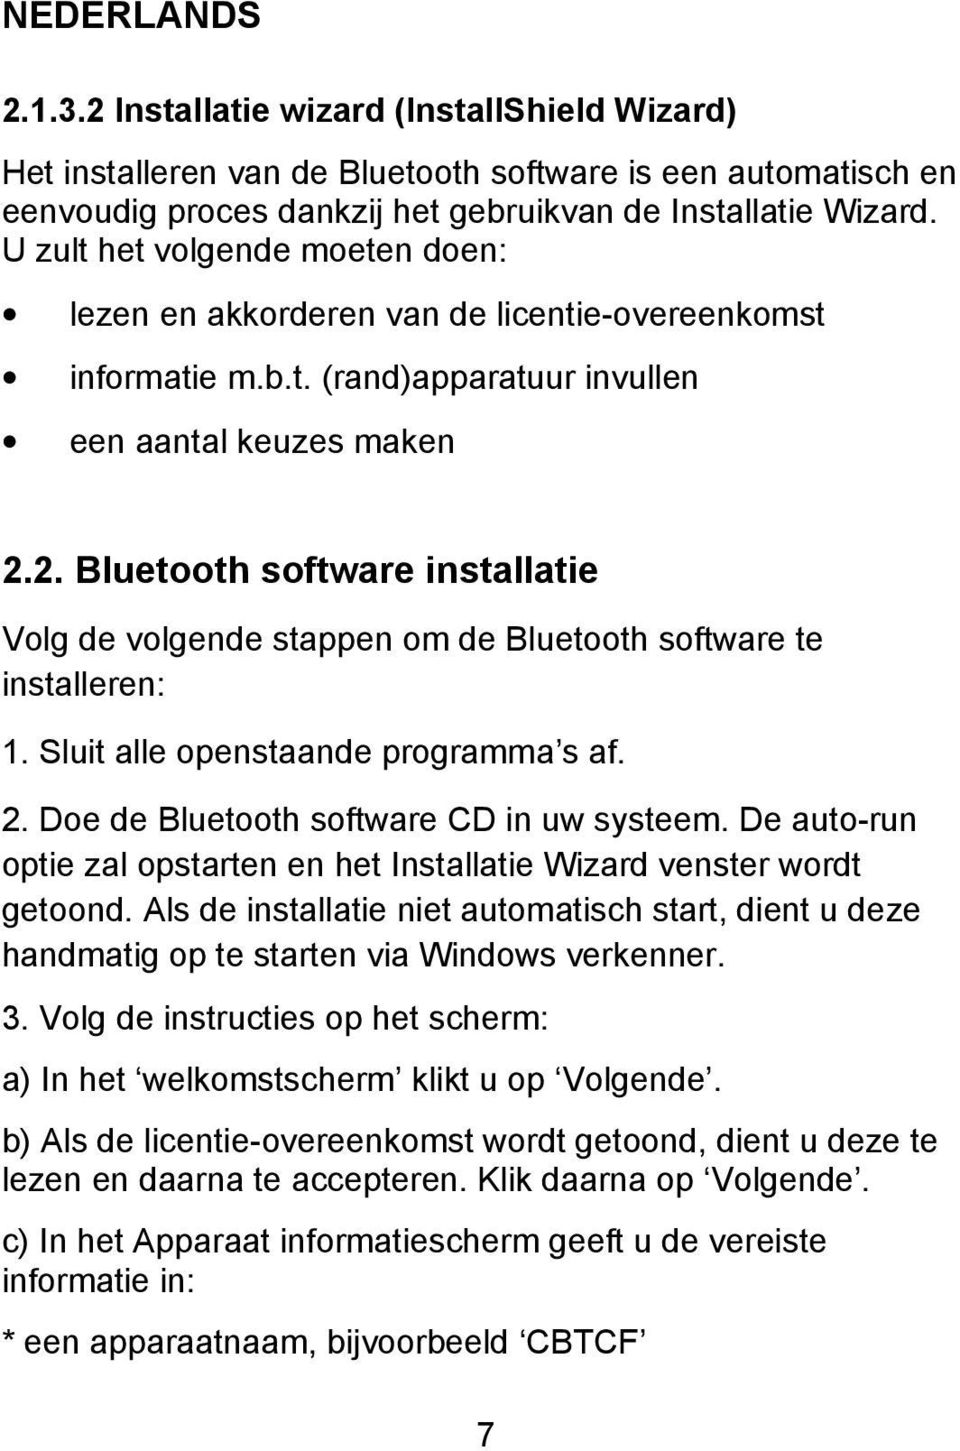 2. Bluetooth software installatie Volg de volgende stappen om de Bluetooth software te installeren: 1. Sluit alle openstaande programma s af. 2. Doe de Bluetooth software CD in uw systeem.